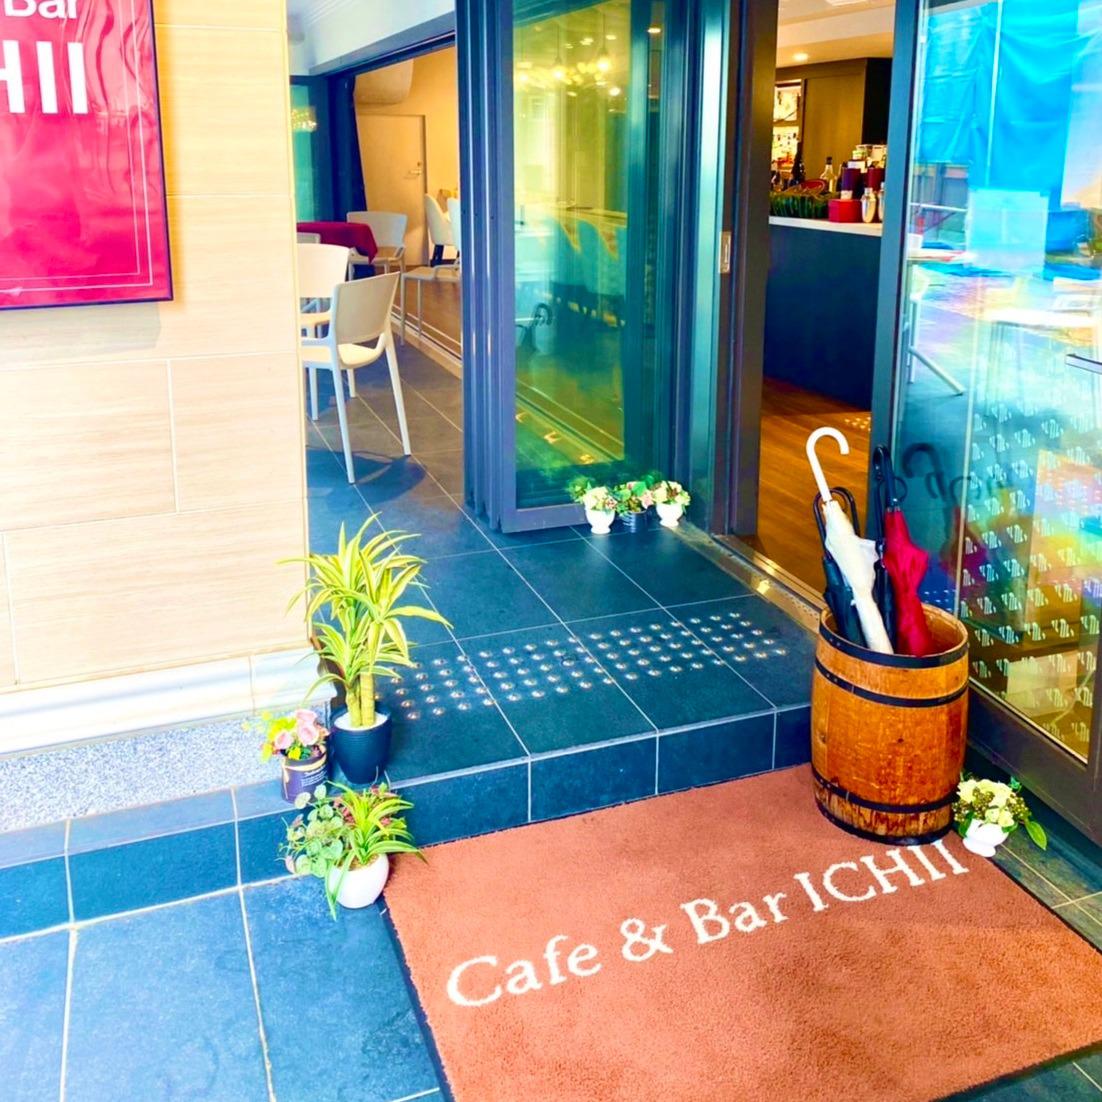 Cafe & Bar ICHII Logo